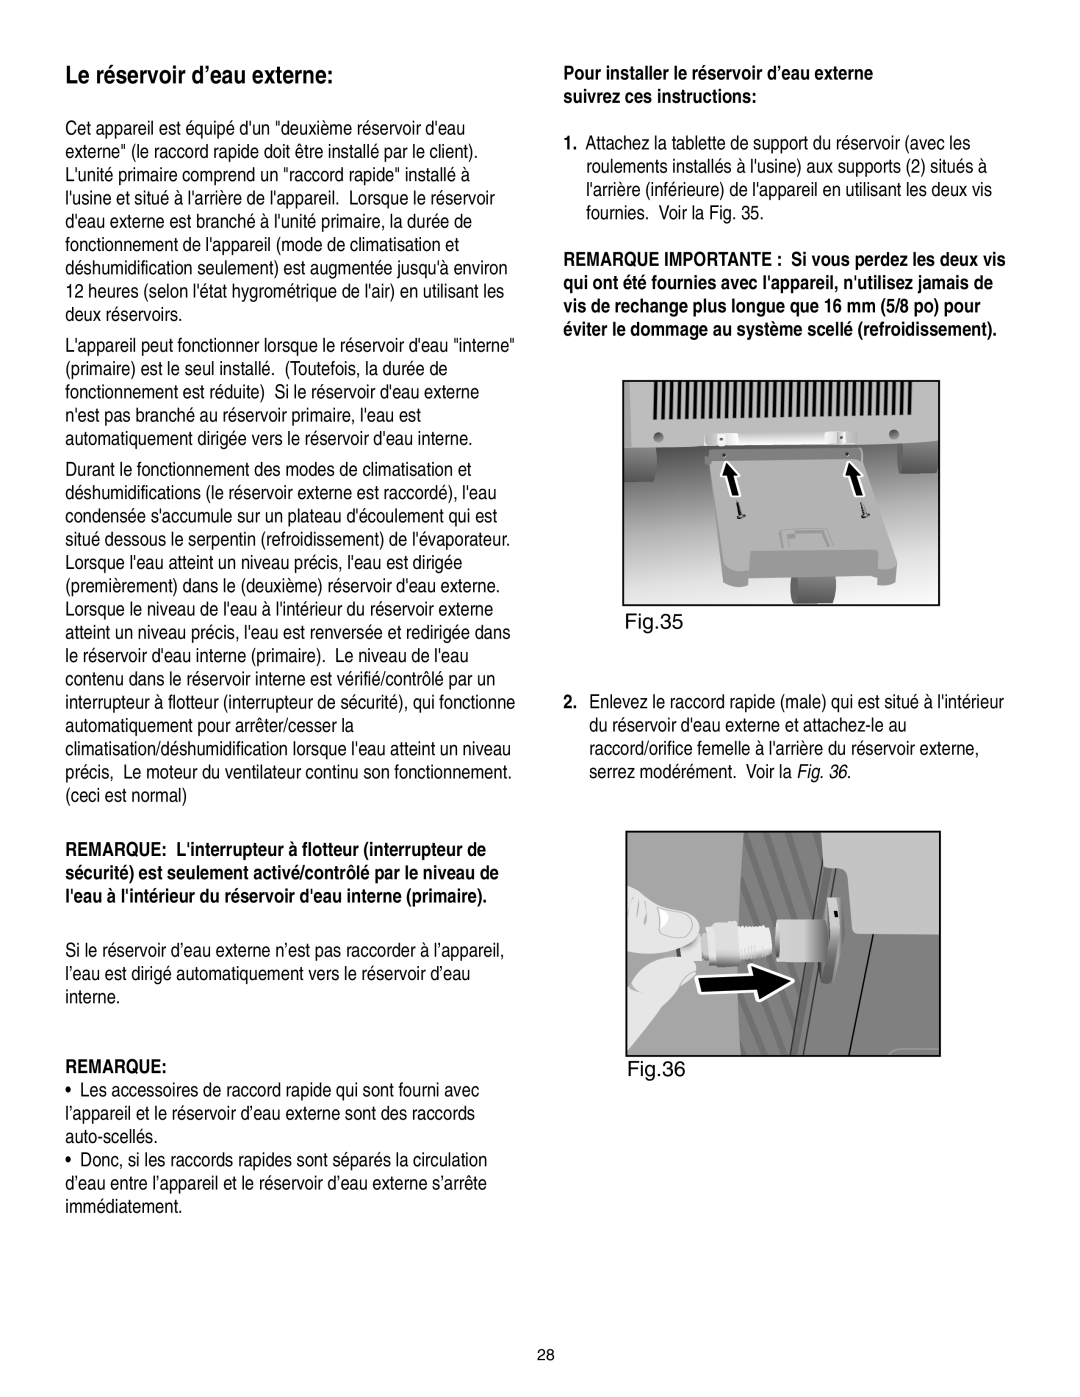 Danby SPAC8499 manual Le réservoir d’eau externe, Remarque 